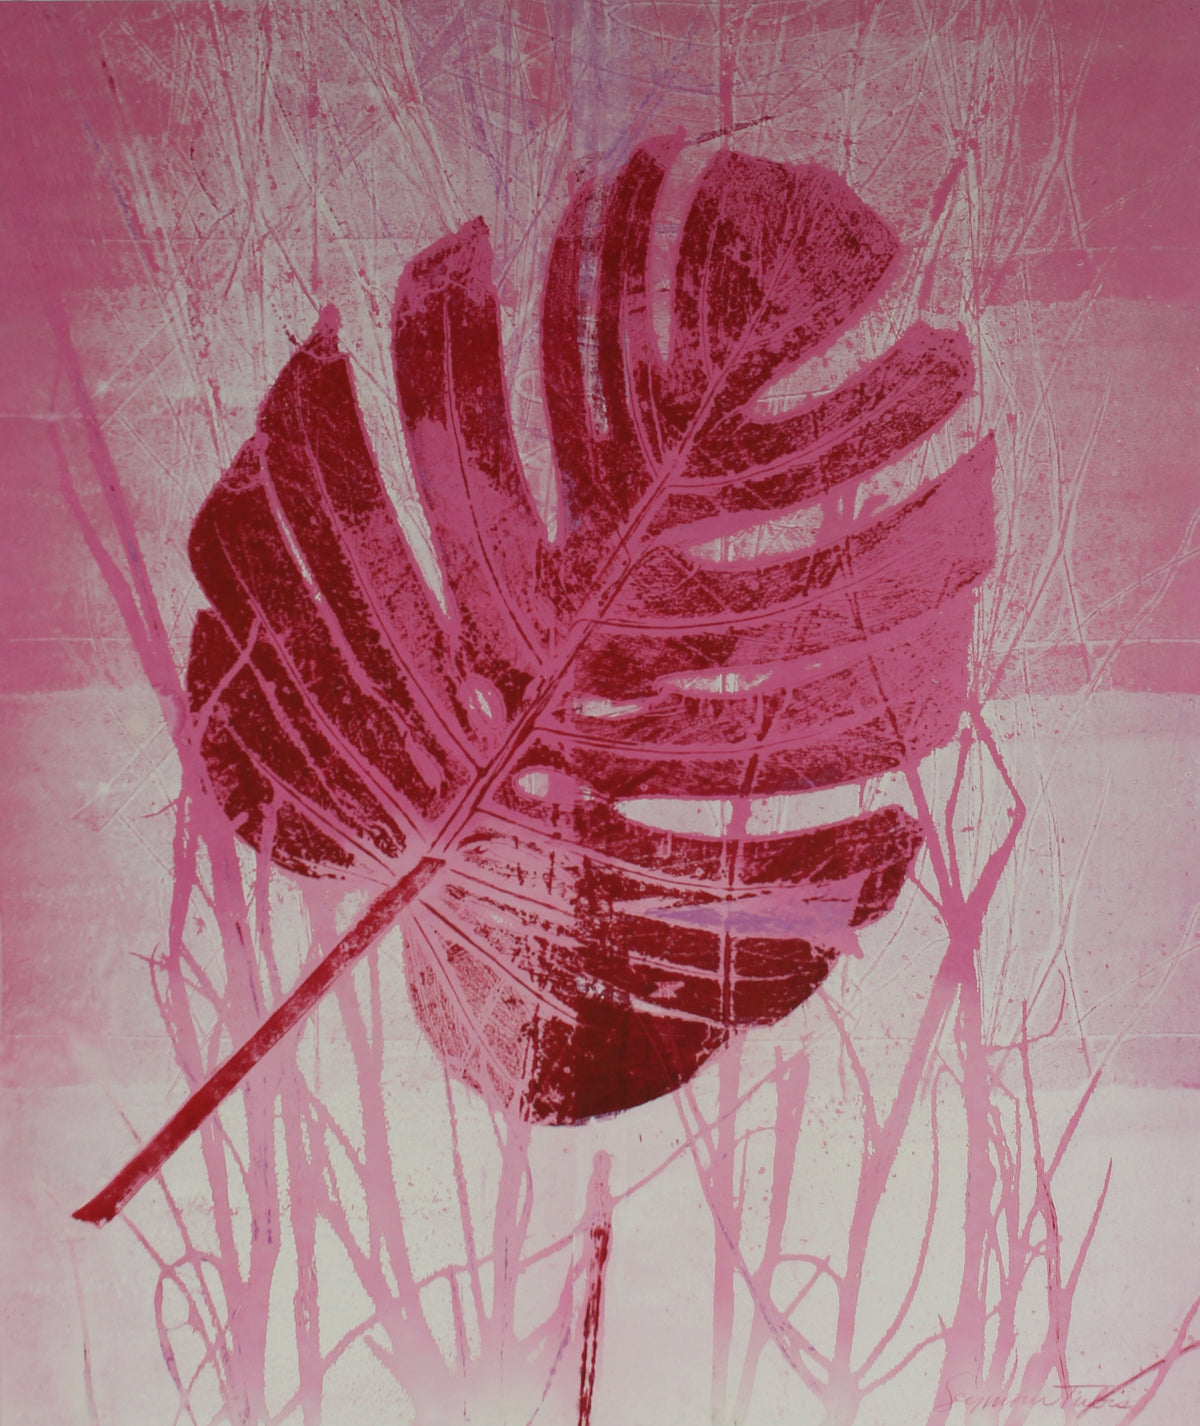 &lt;i&gt;Pink Leaf - Nature Print&lt;/i&gt;&lt;br&gt;Mid Century Mixed Media Print&lt;br&gt;&lt;br&gt;#59231